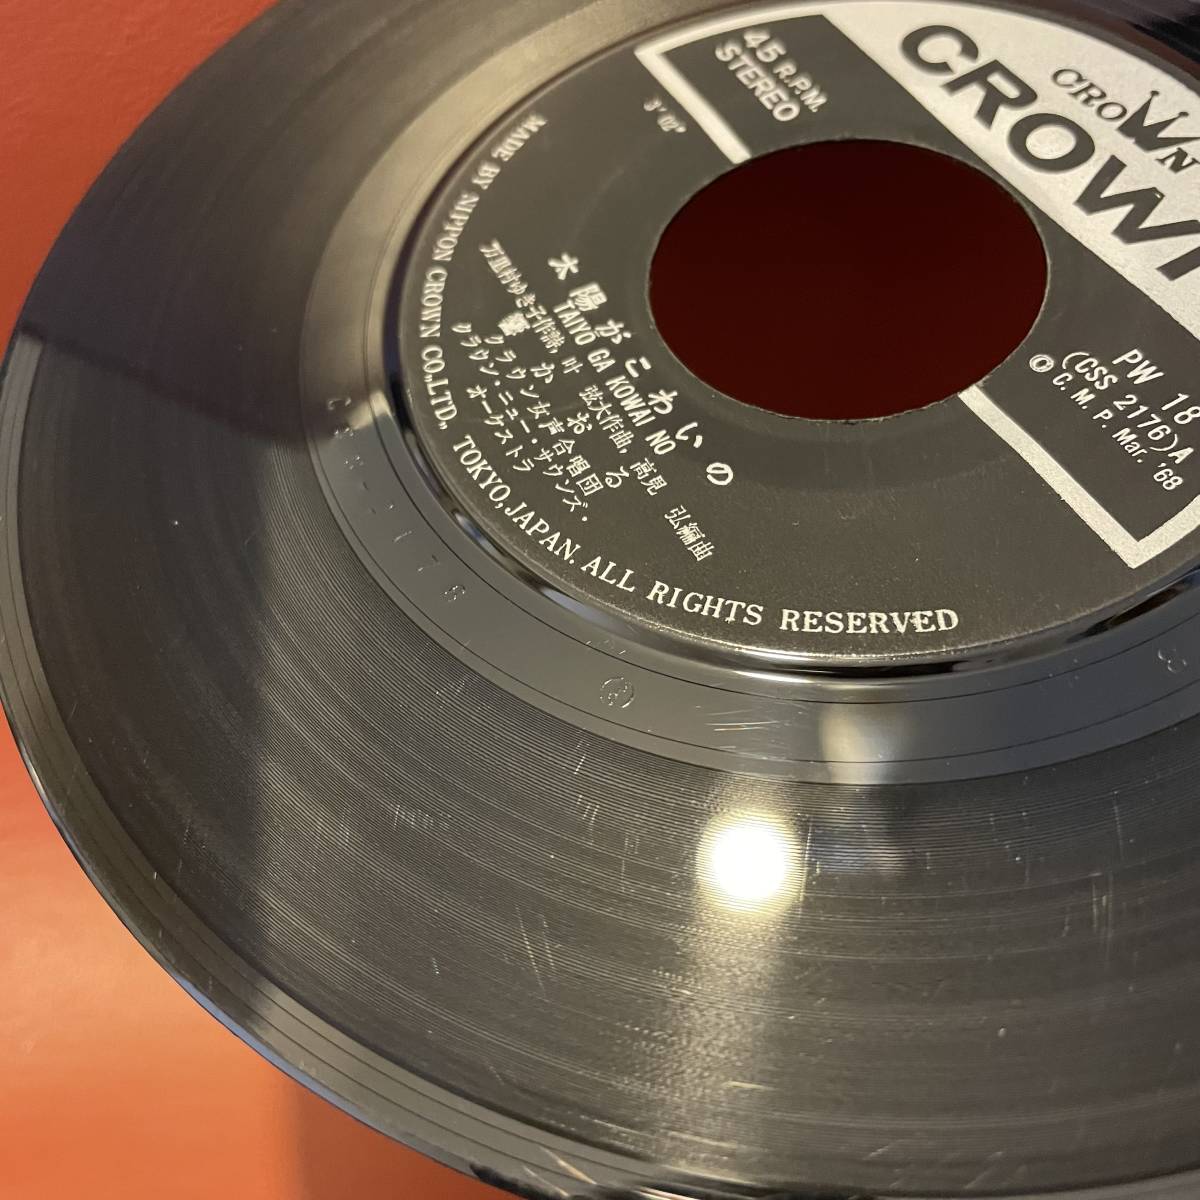 響かおる - 太陽がこわいの / 愛されたいの EP CROWN PW-18 1968年 和モノ グルーヴ歌謡 高見弘_画像5